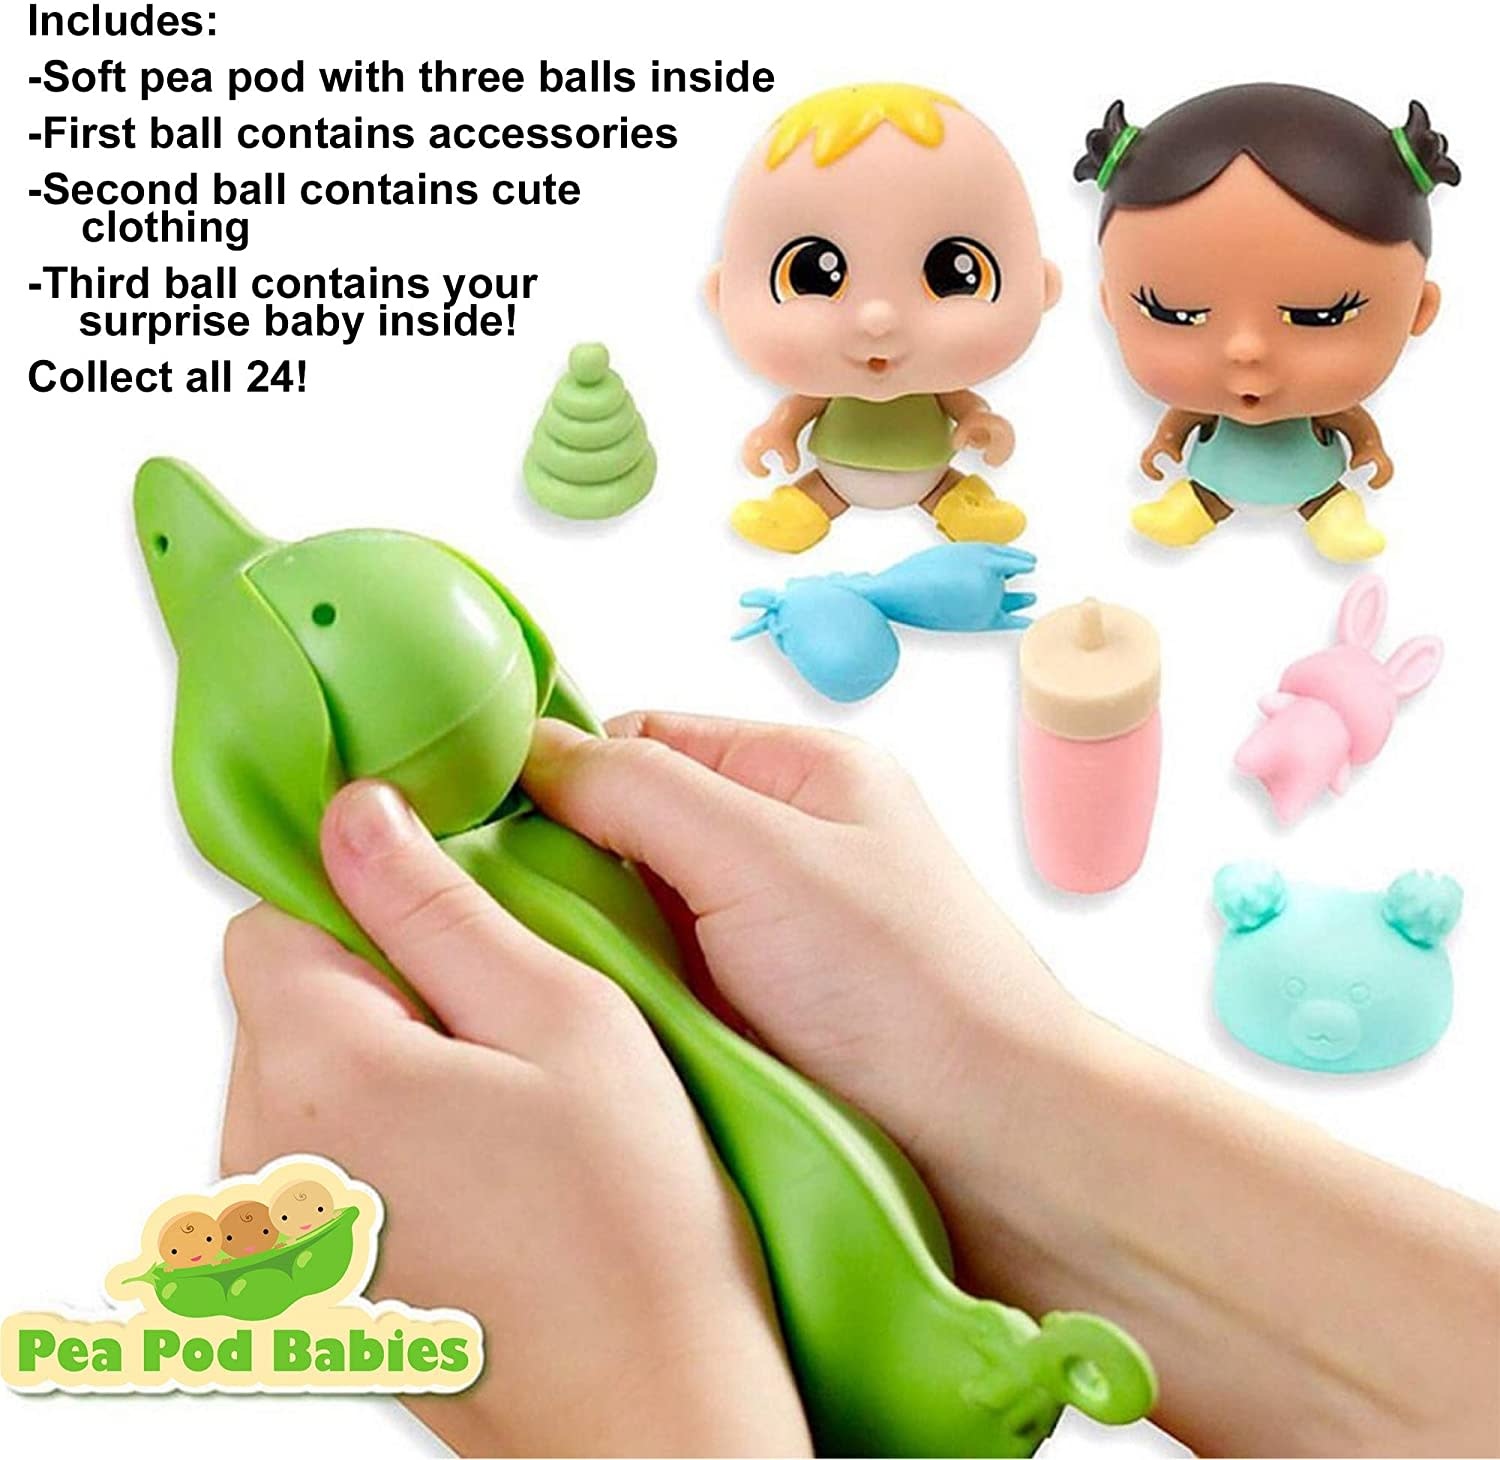 Pea Pod Babies by Thin Air